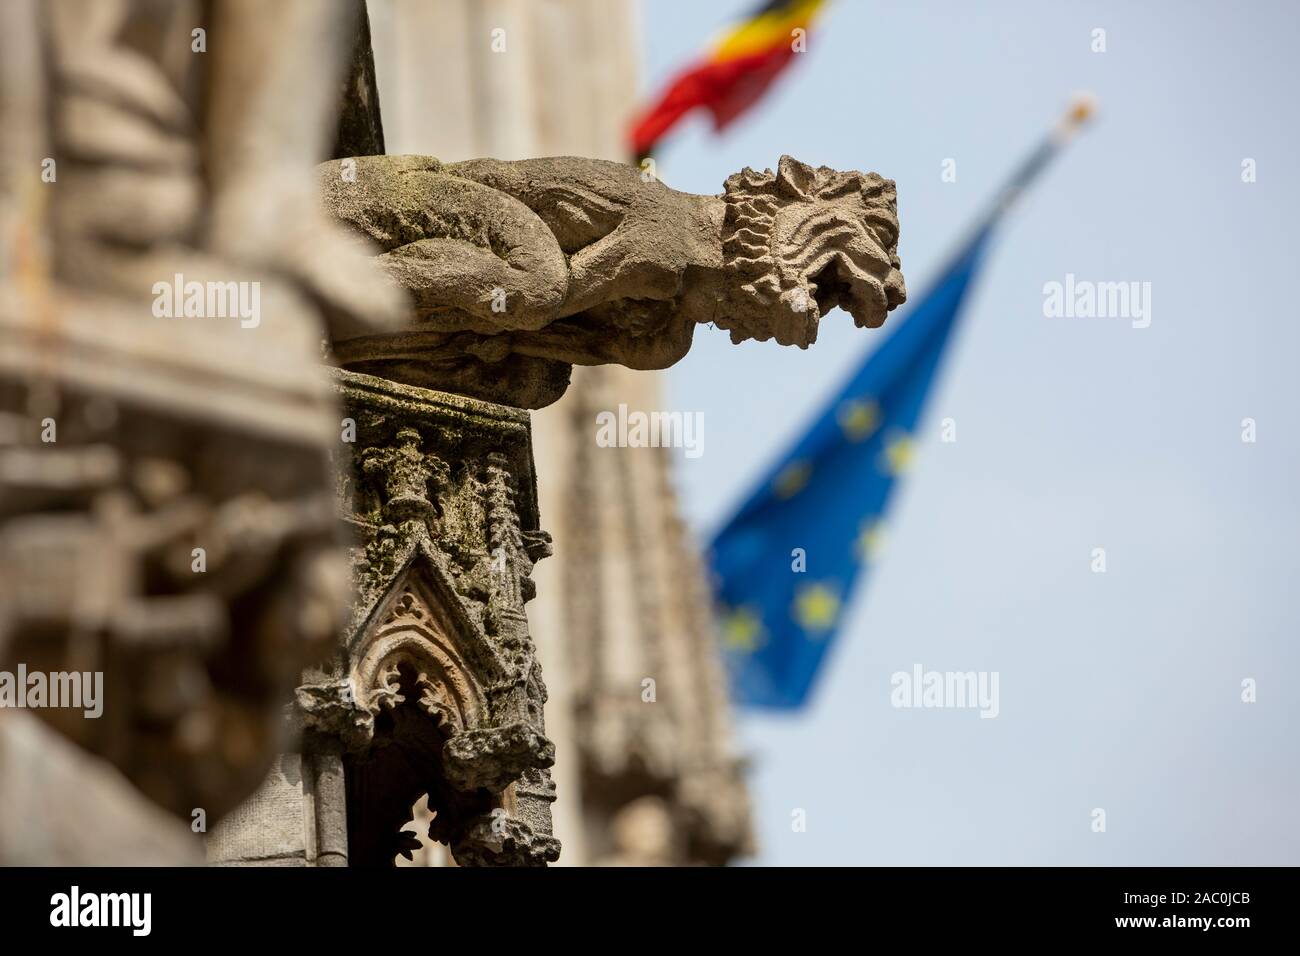 Gros plan d'une gargouille gothique à l'extérieur de l'Hôtel de Ville de Bruxelles à la Grand Place, Bruxelles, Belgique. Banque D'Images